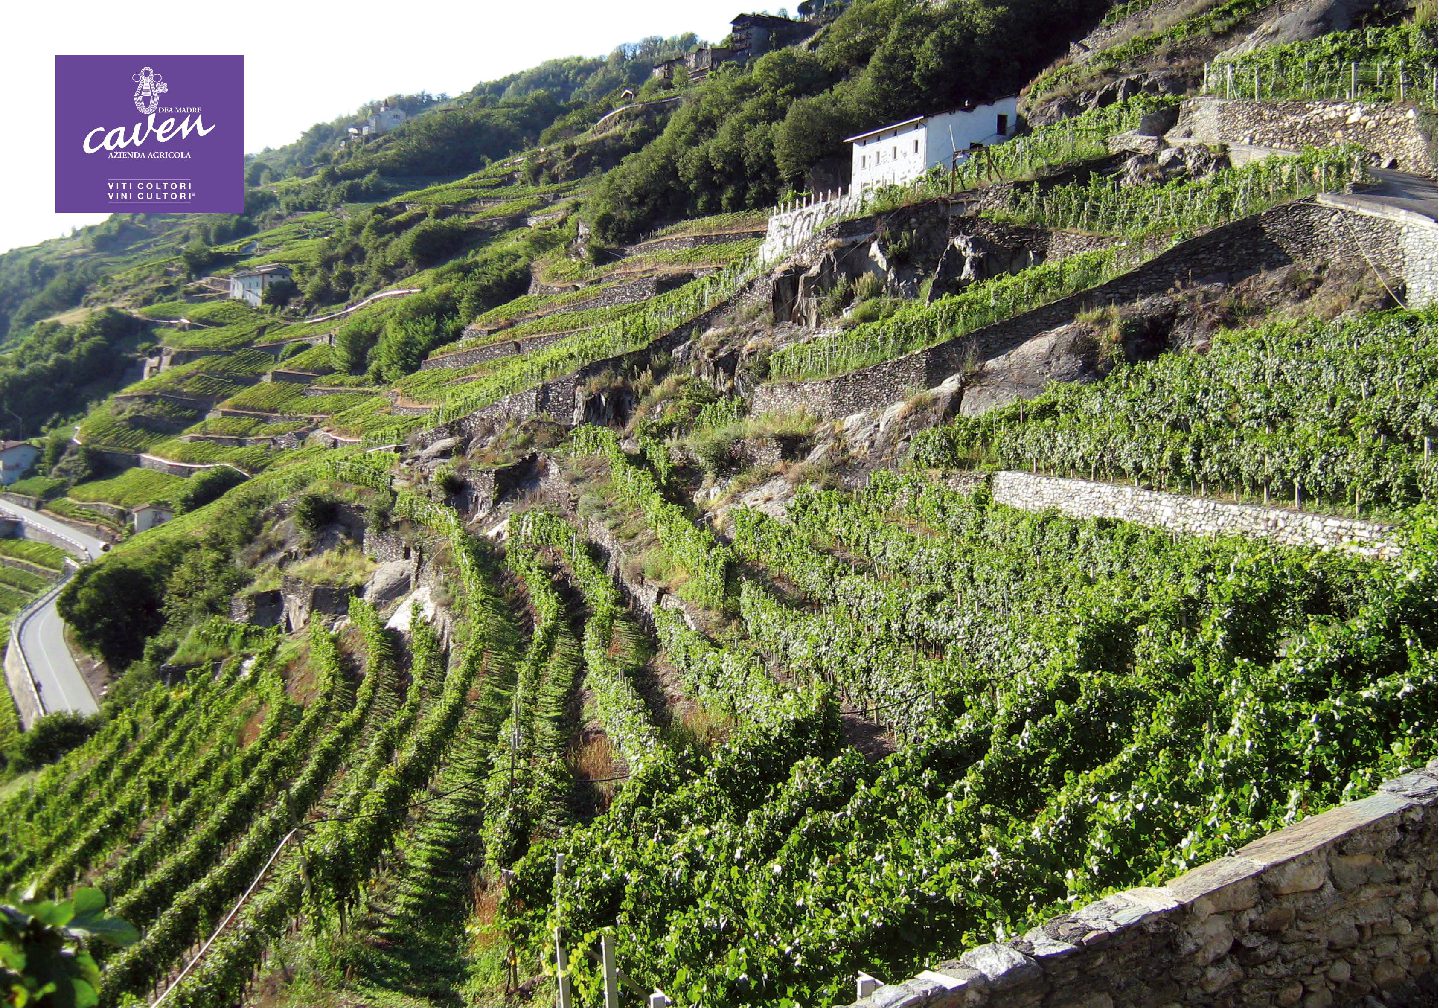 #winestories – Caven e winvelivery uniscono innovazione e tradizione!